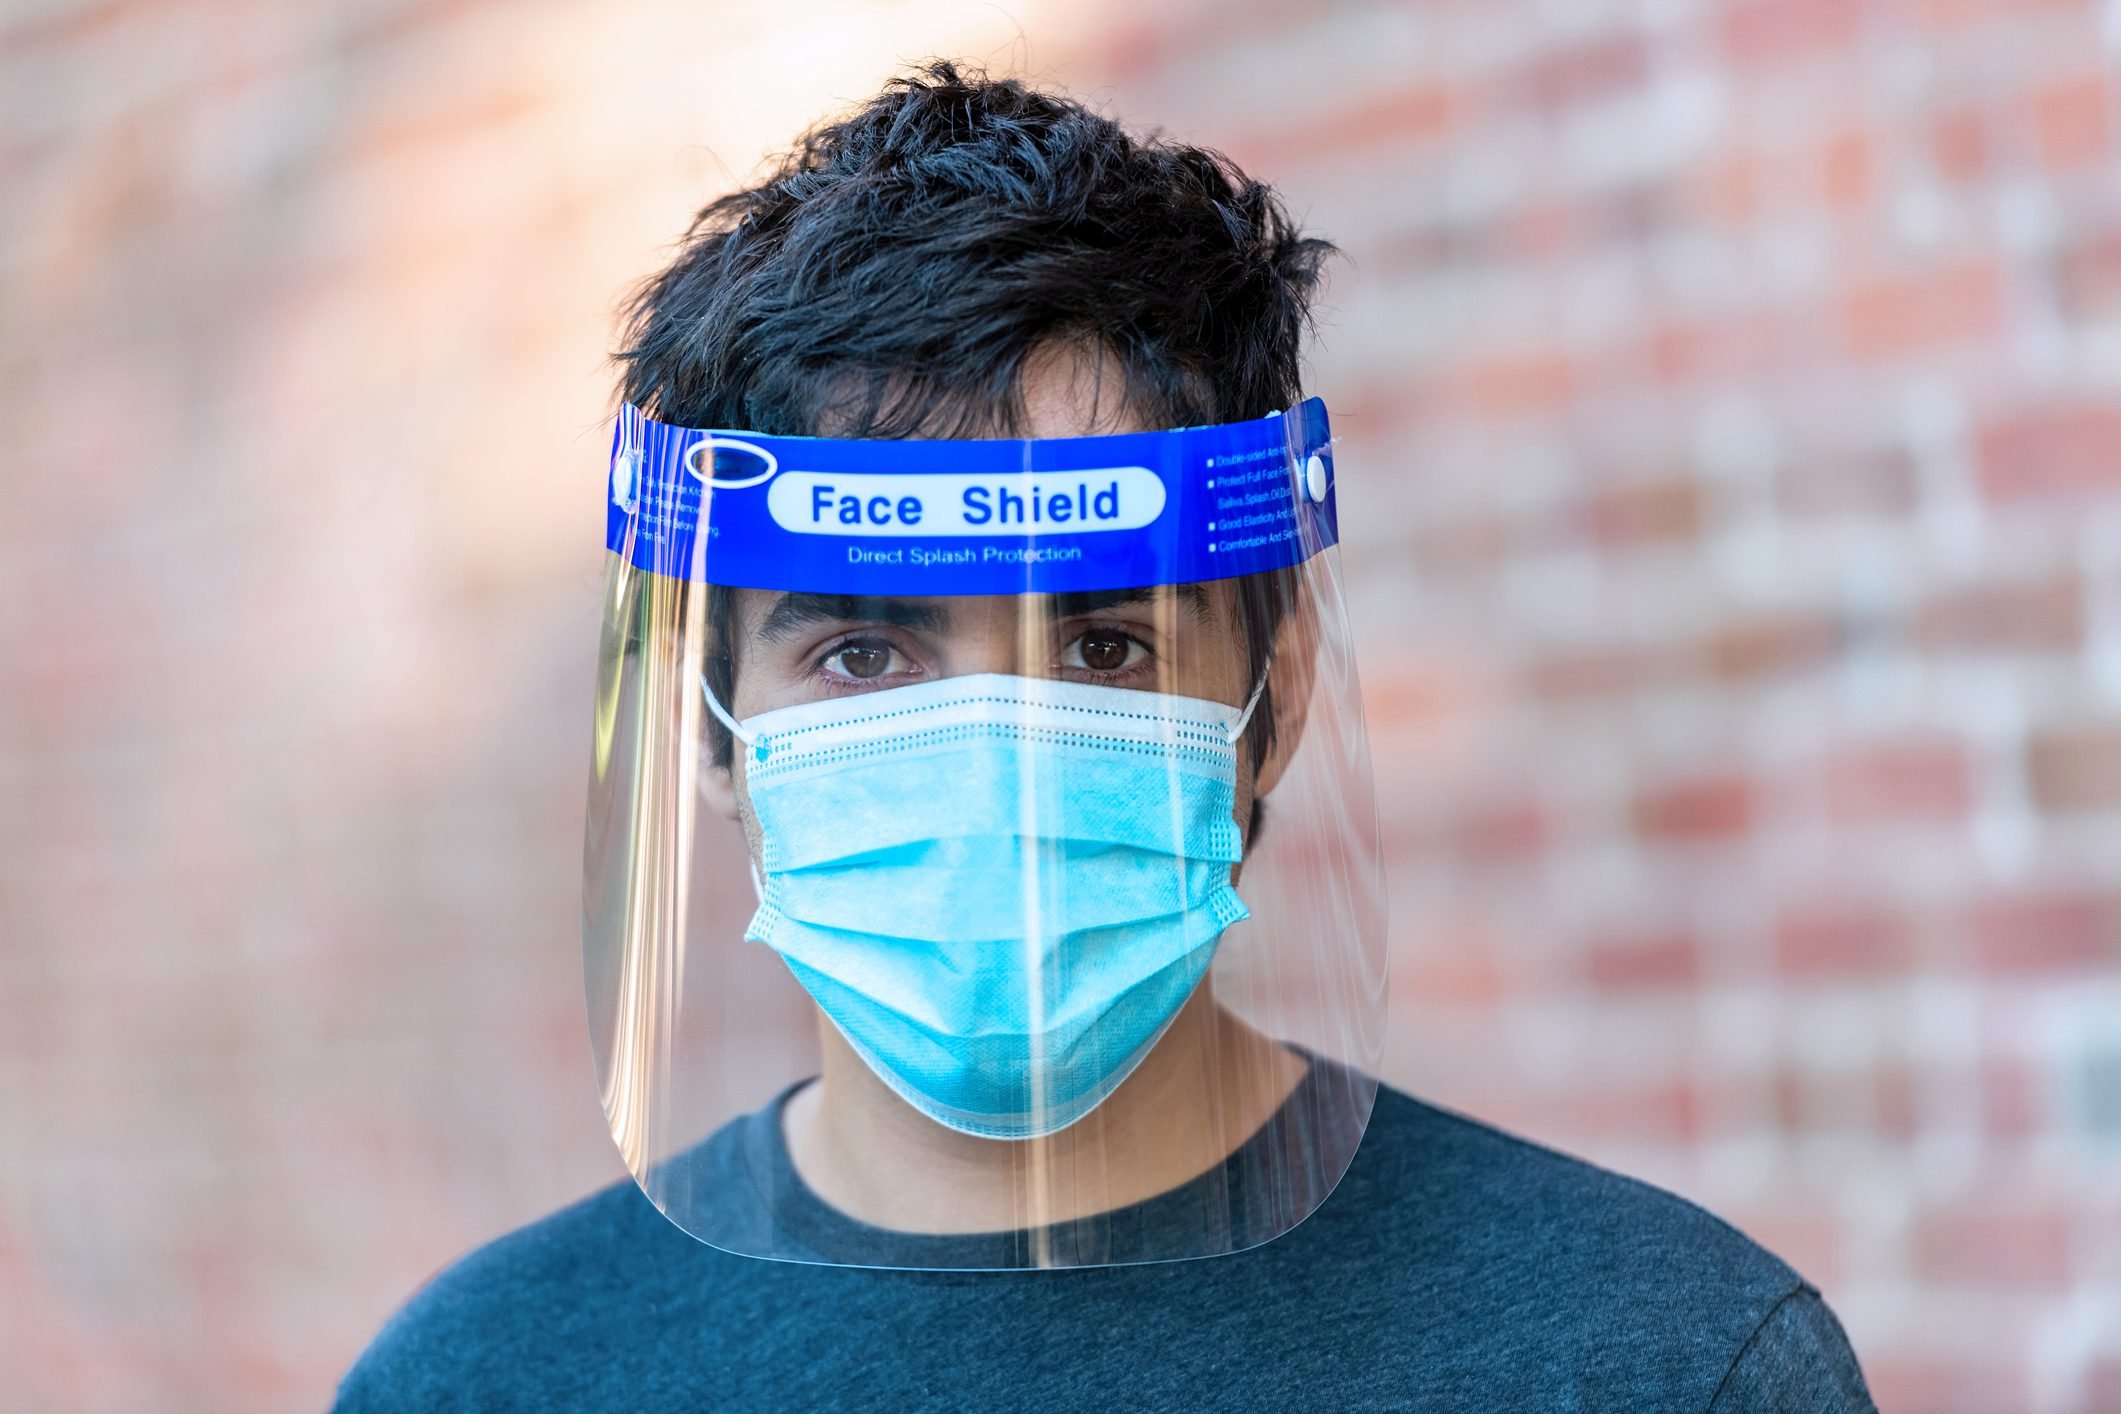 Do Face Shields Really Help Stop Coronavirus?